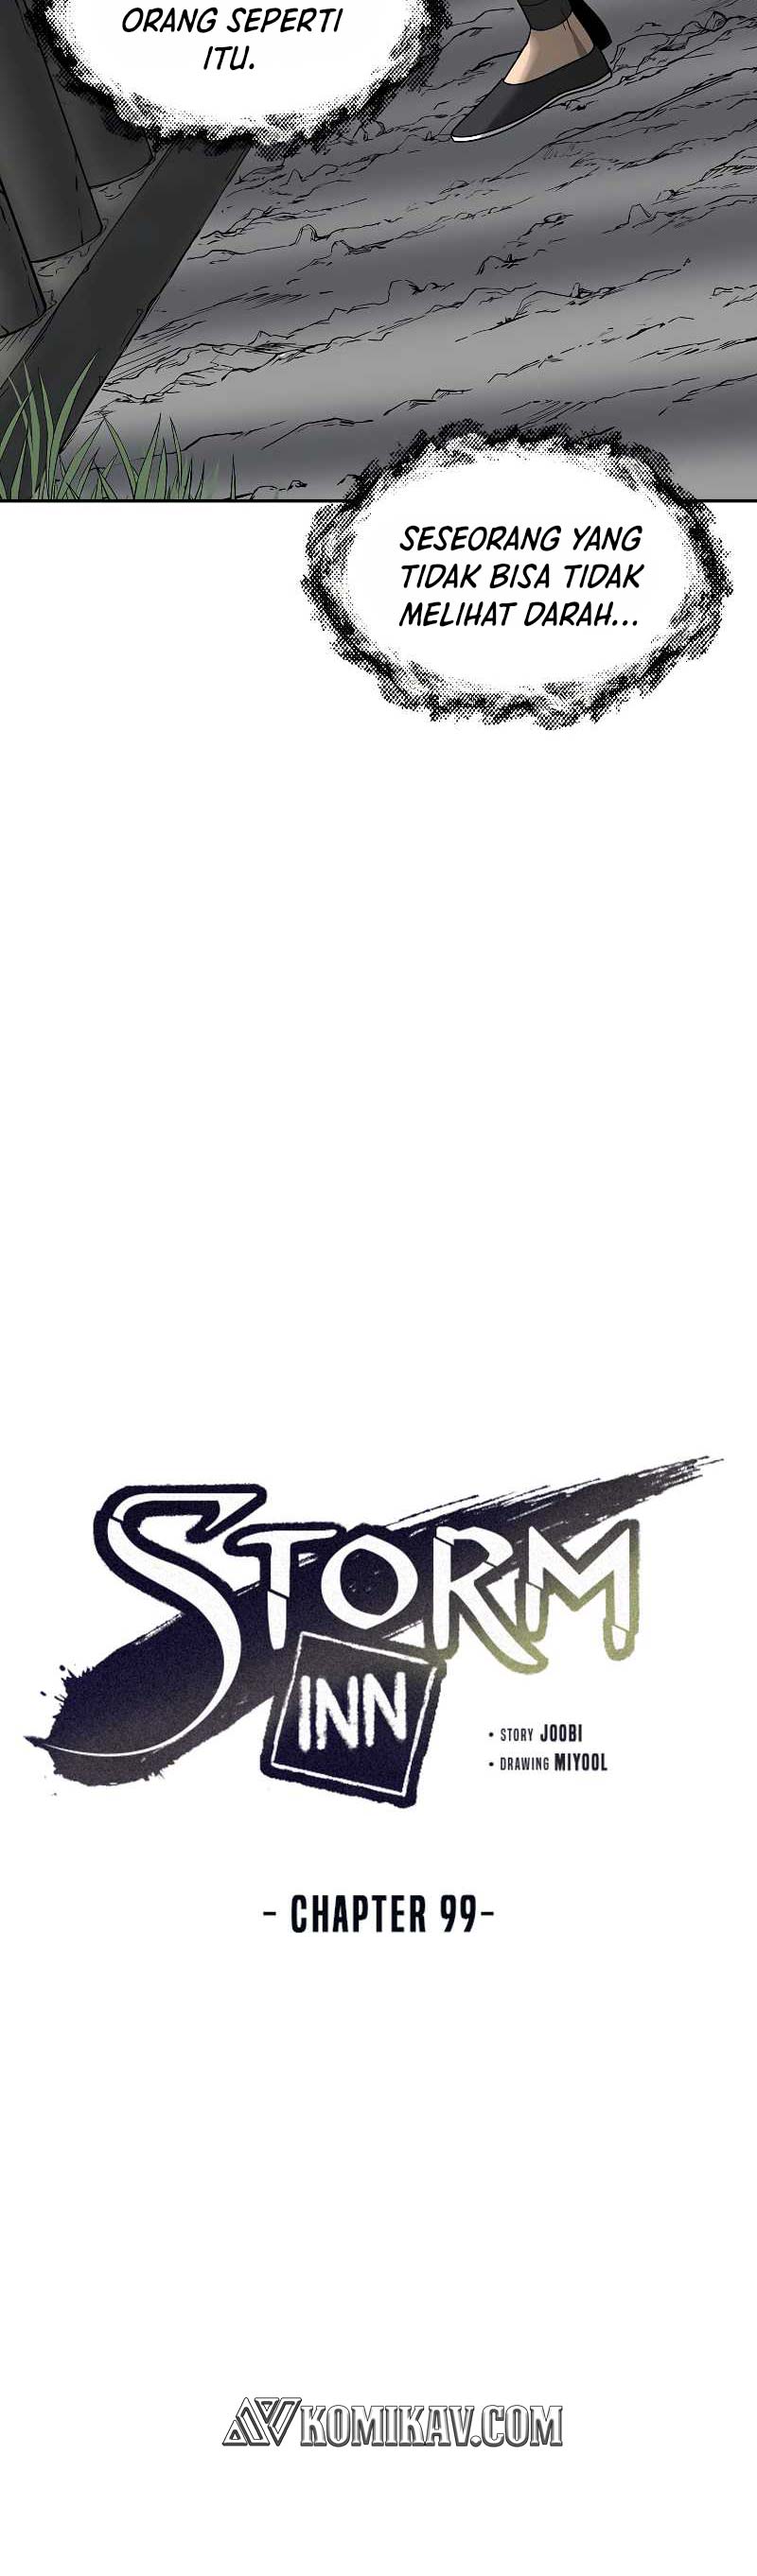 Storm Inn Chapter 99